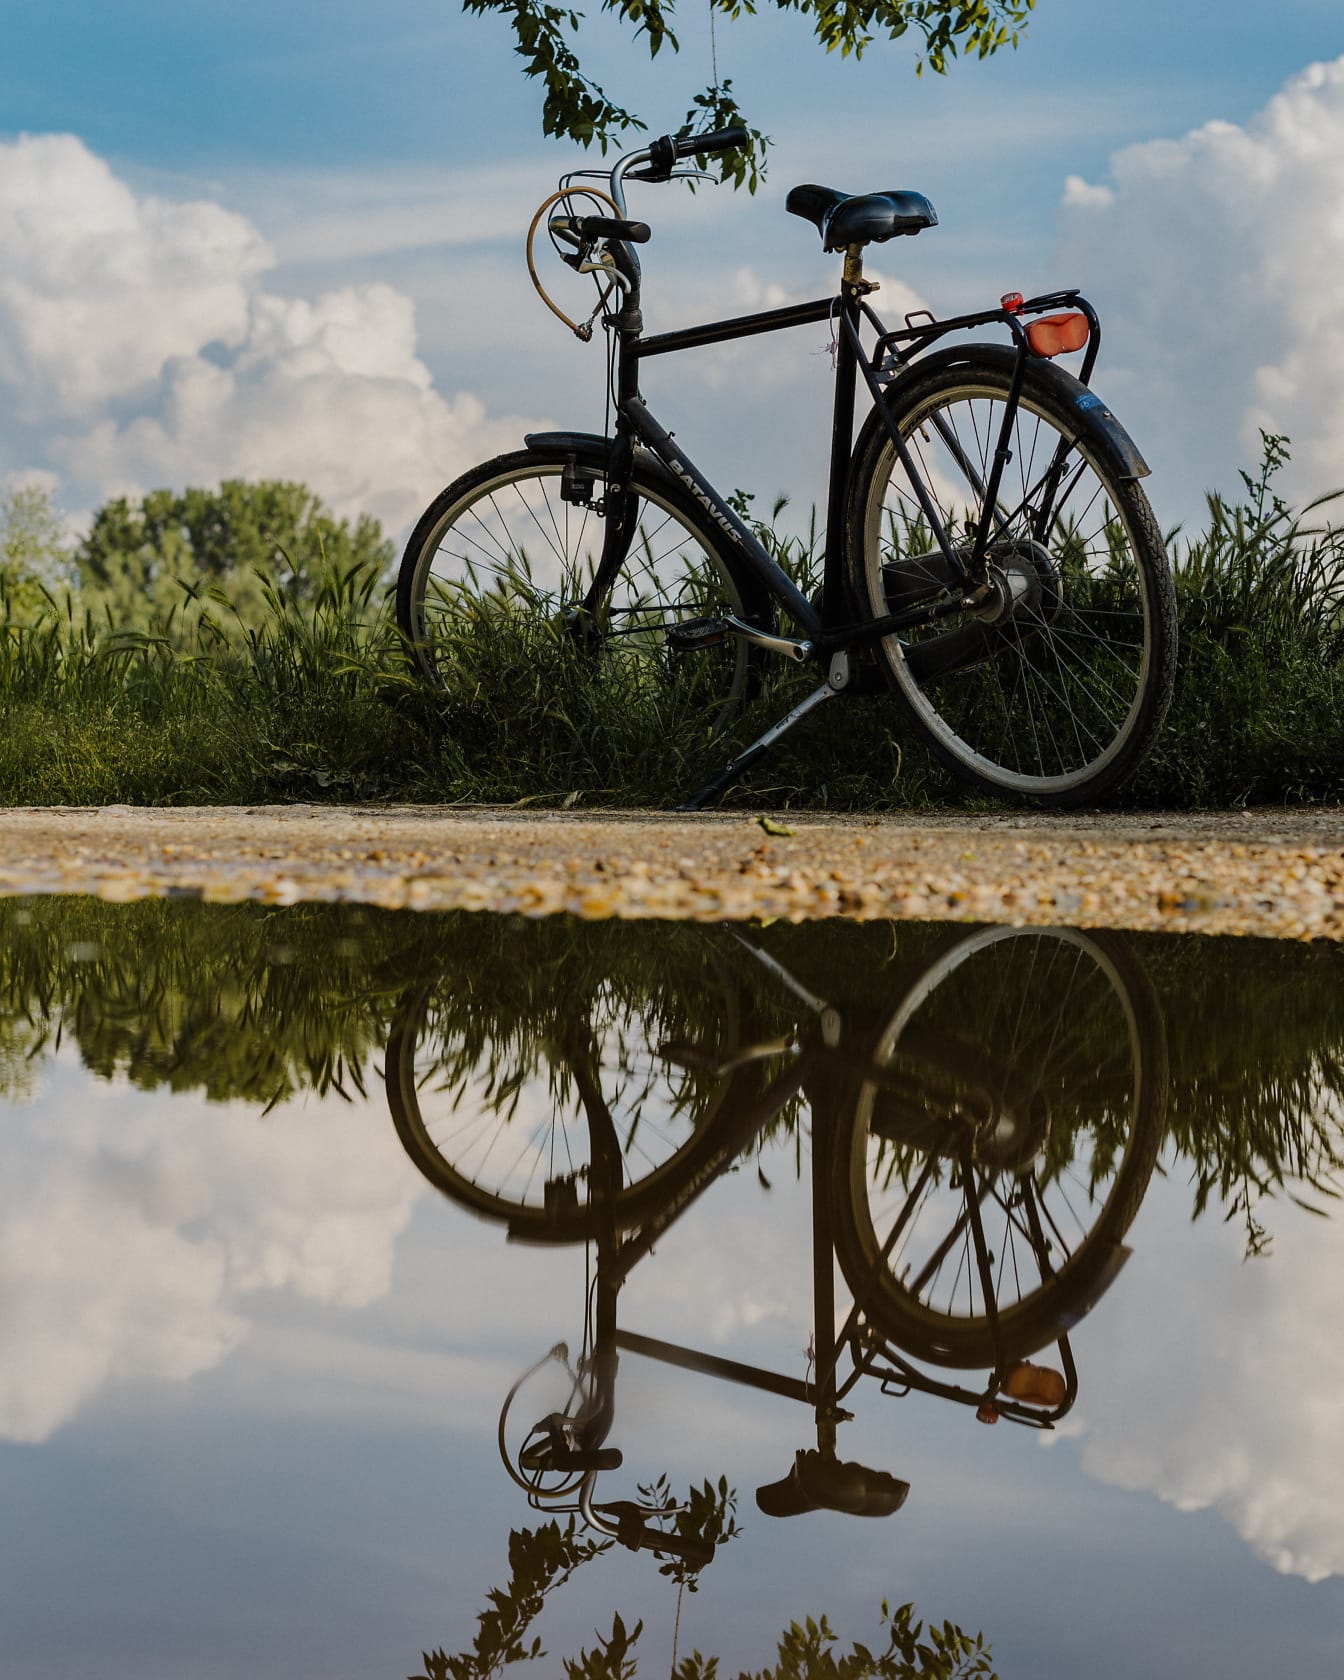 Kerékpár földúton, tükörképkel a tavon